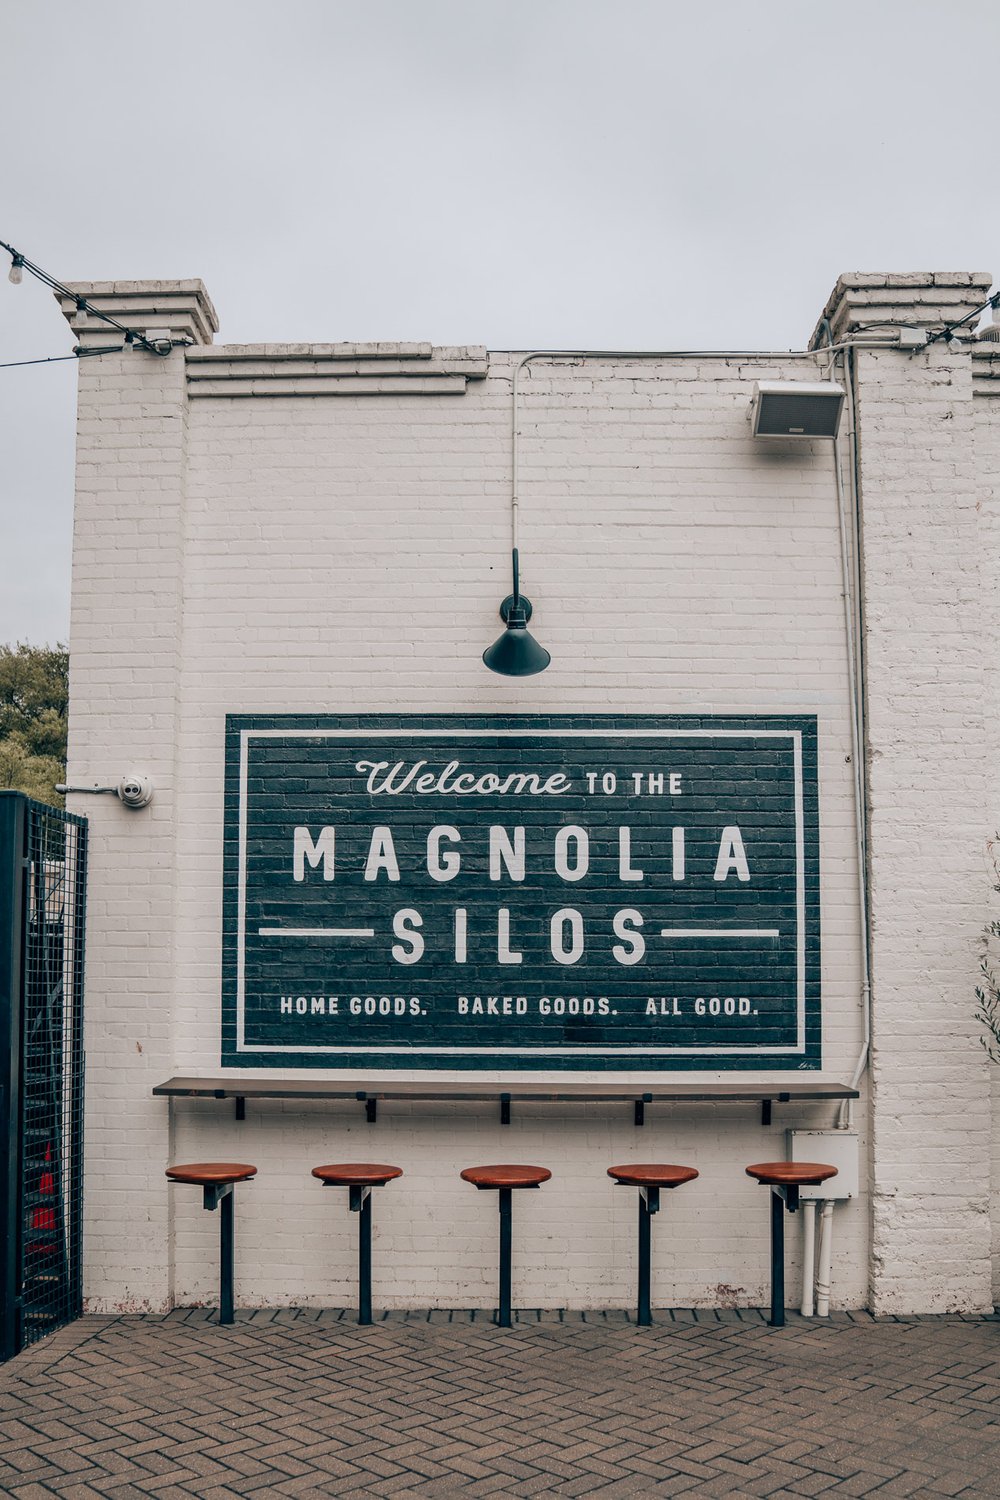 Magnolia Silos in Waco Texas